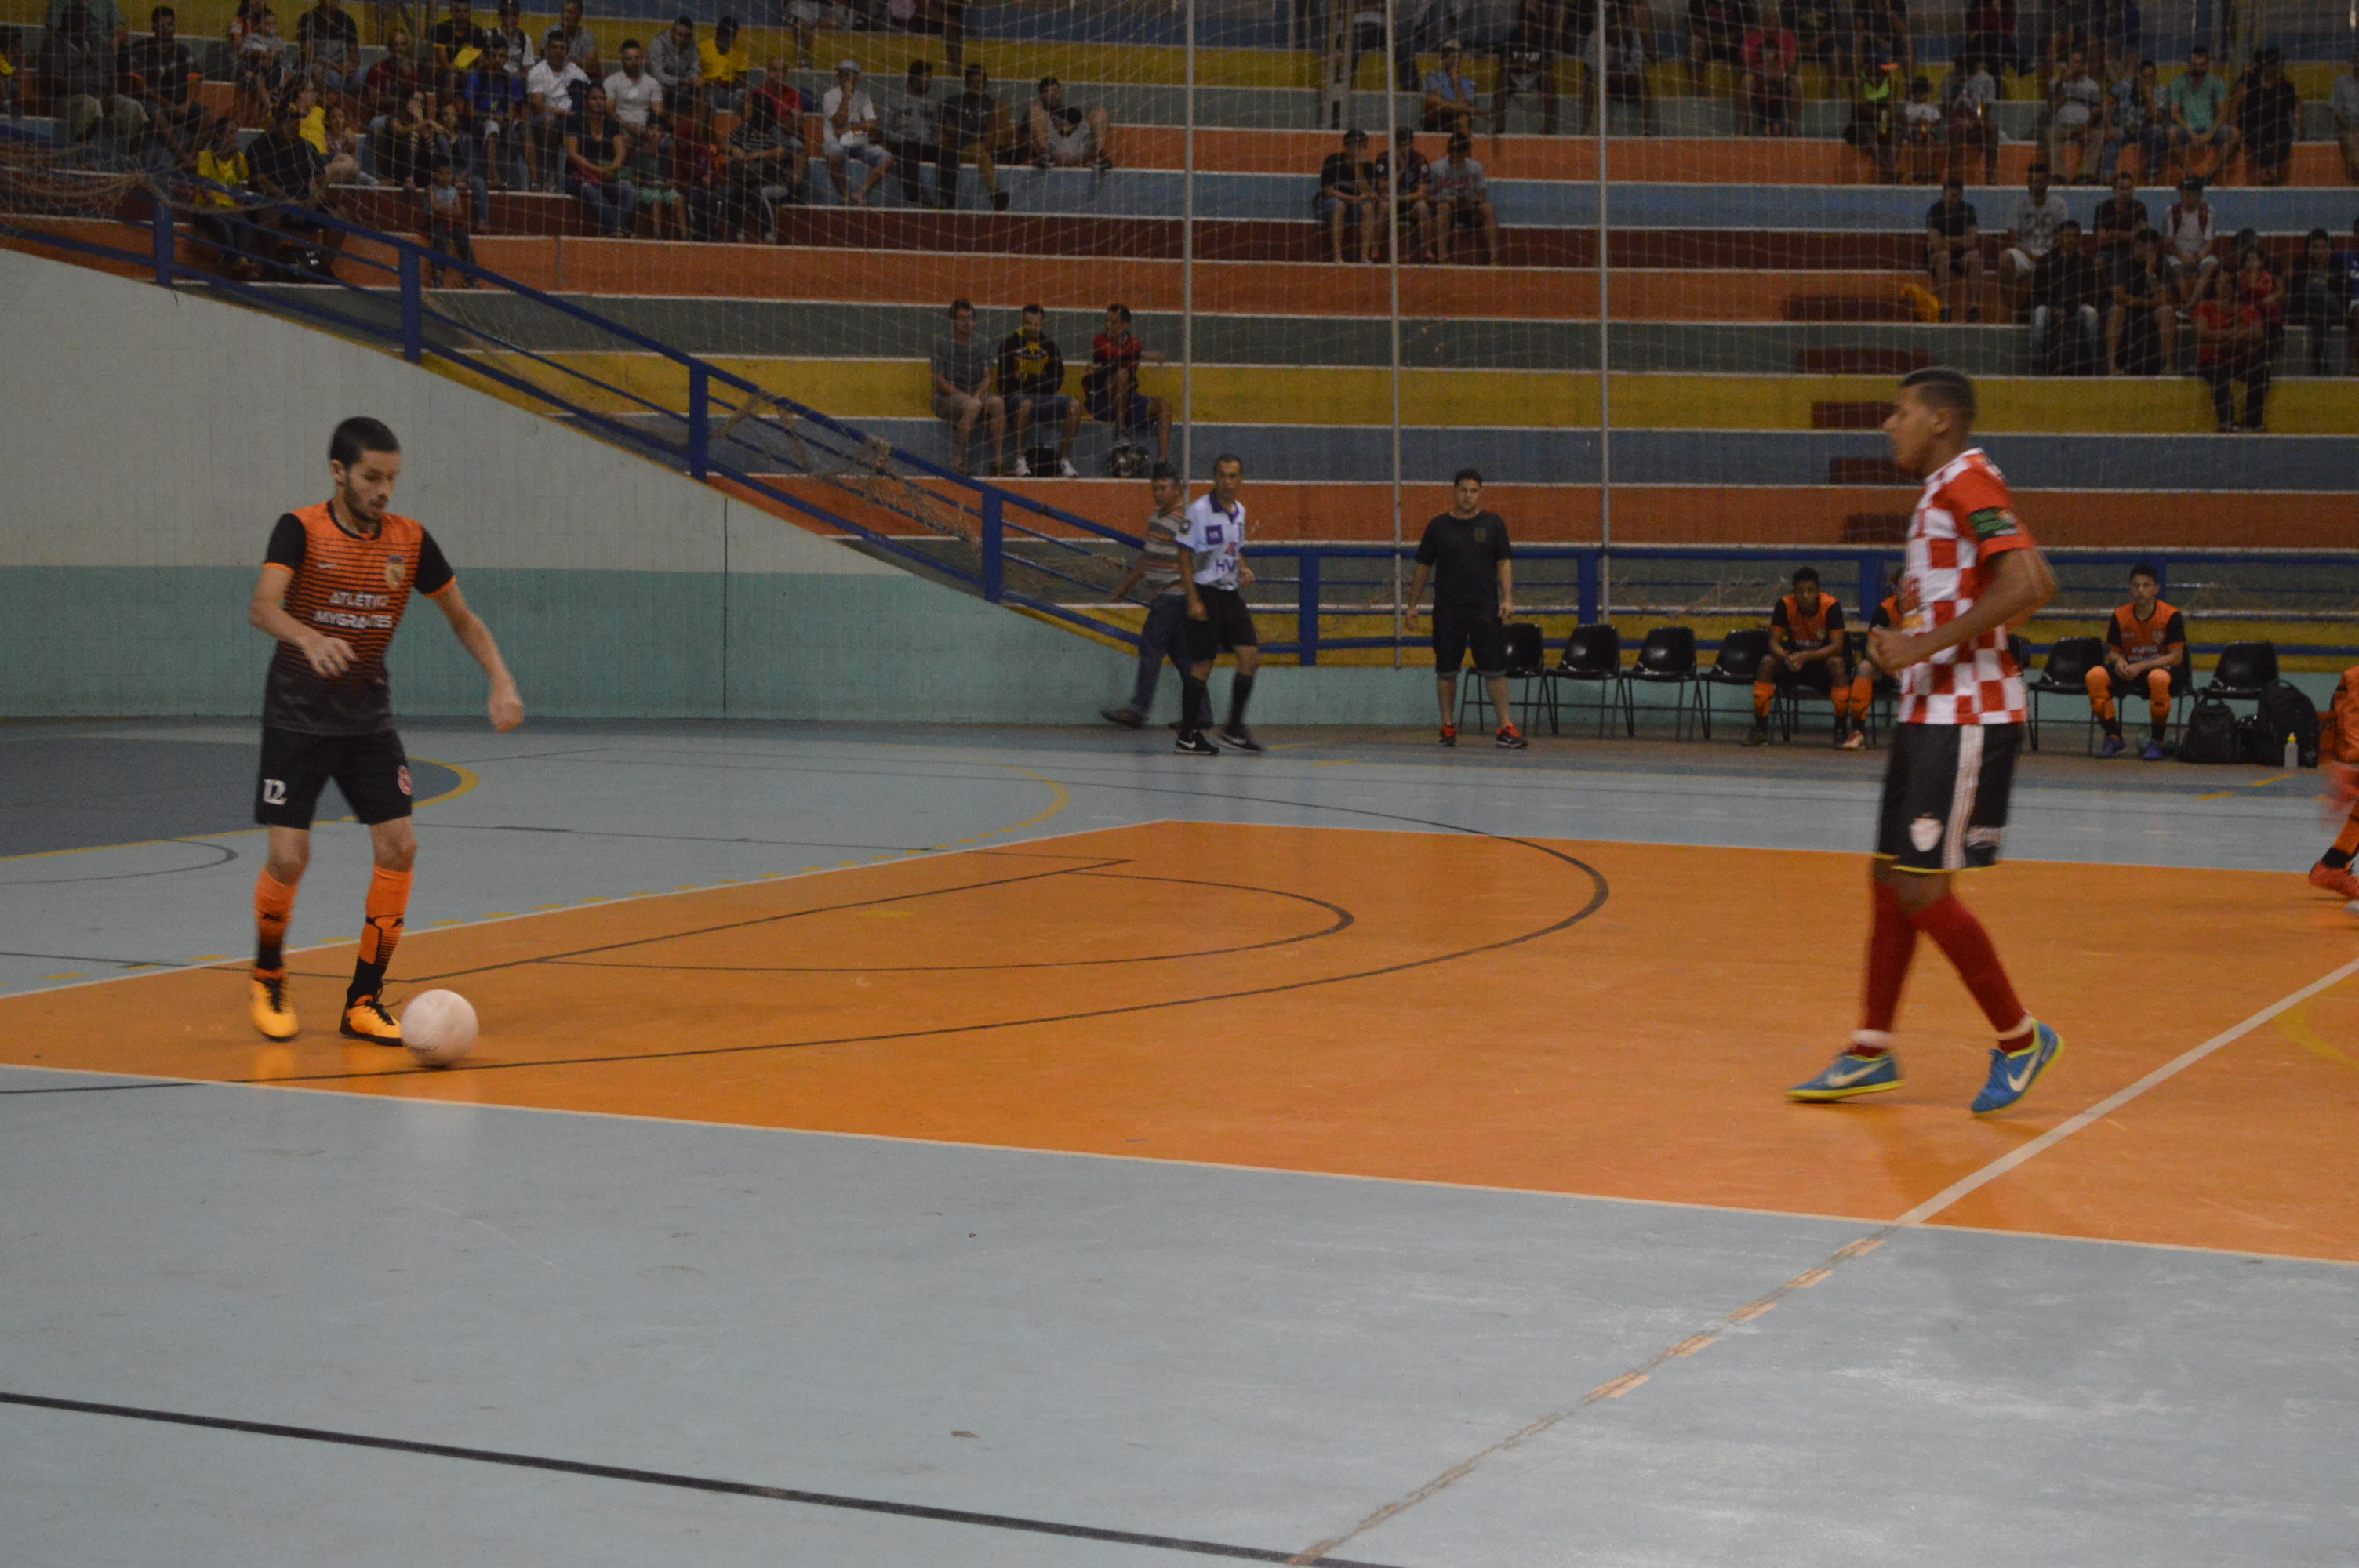 Campeonato Jauense de Futsal da Terceira Divisão: pênaltis - Prefeitura do  Município de Jahu